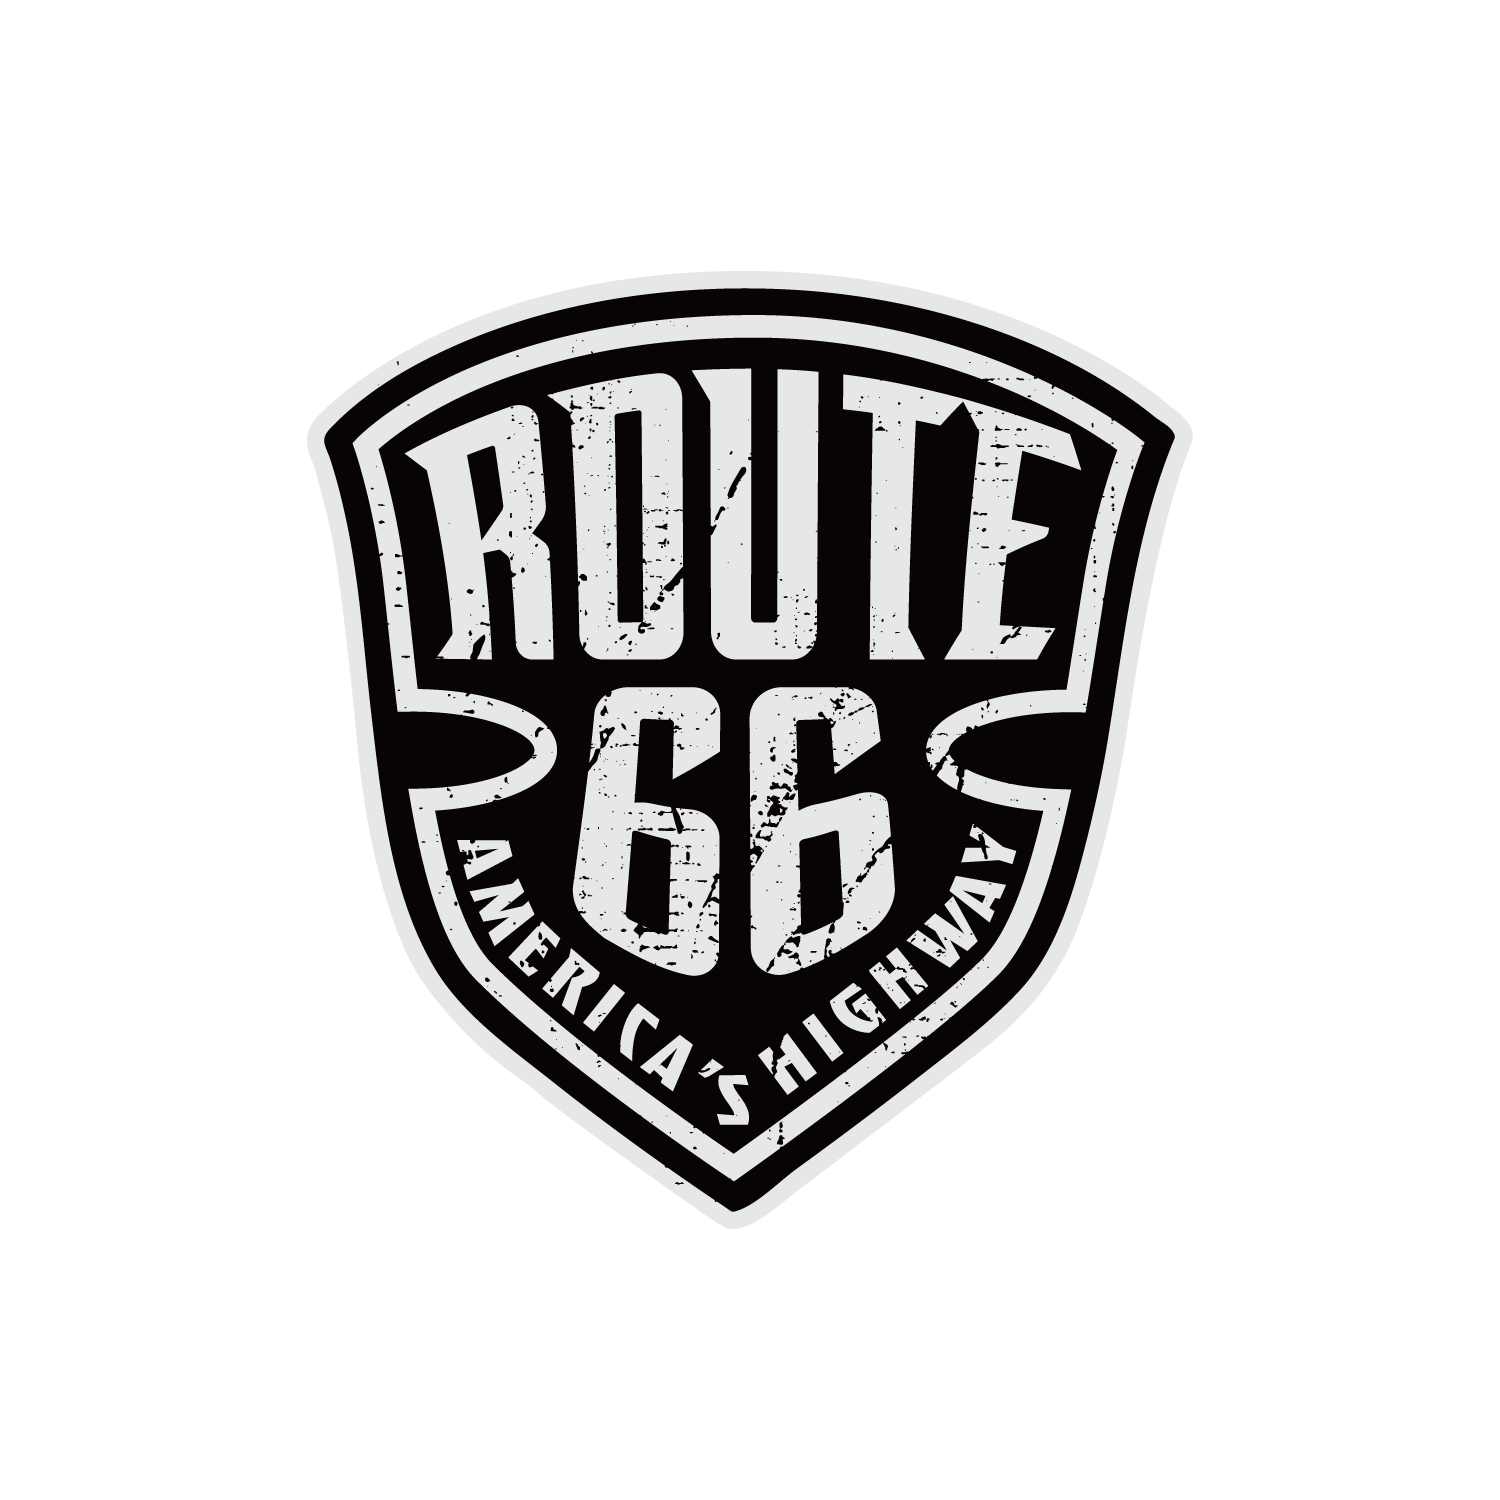 ルート66 ブラック (Route 66-Black and White Badge)